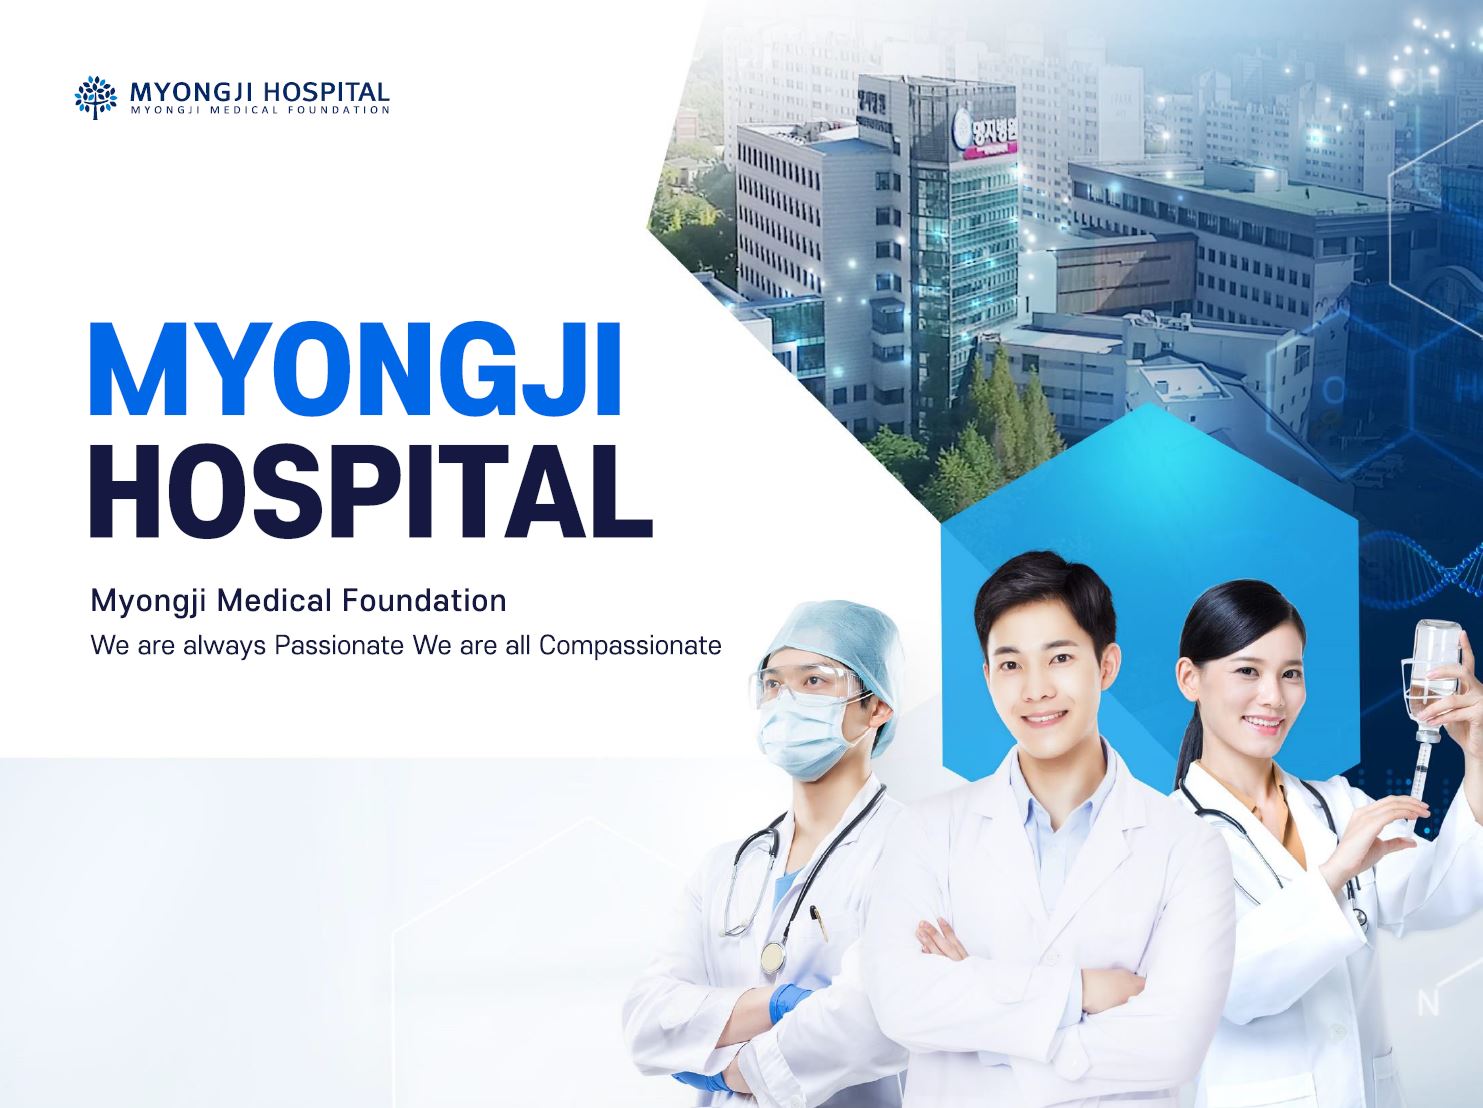 Myongji Hospital là một trong những bệnh viện thông minh, tiên tiến nhất tại Hàn Quốc hiện nay